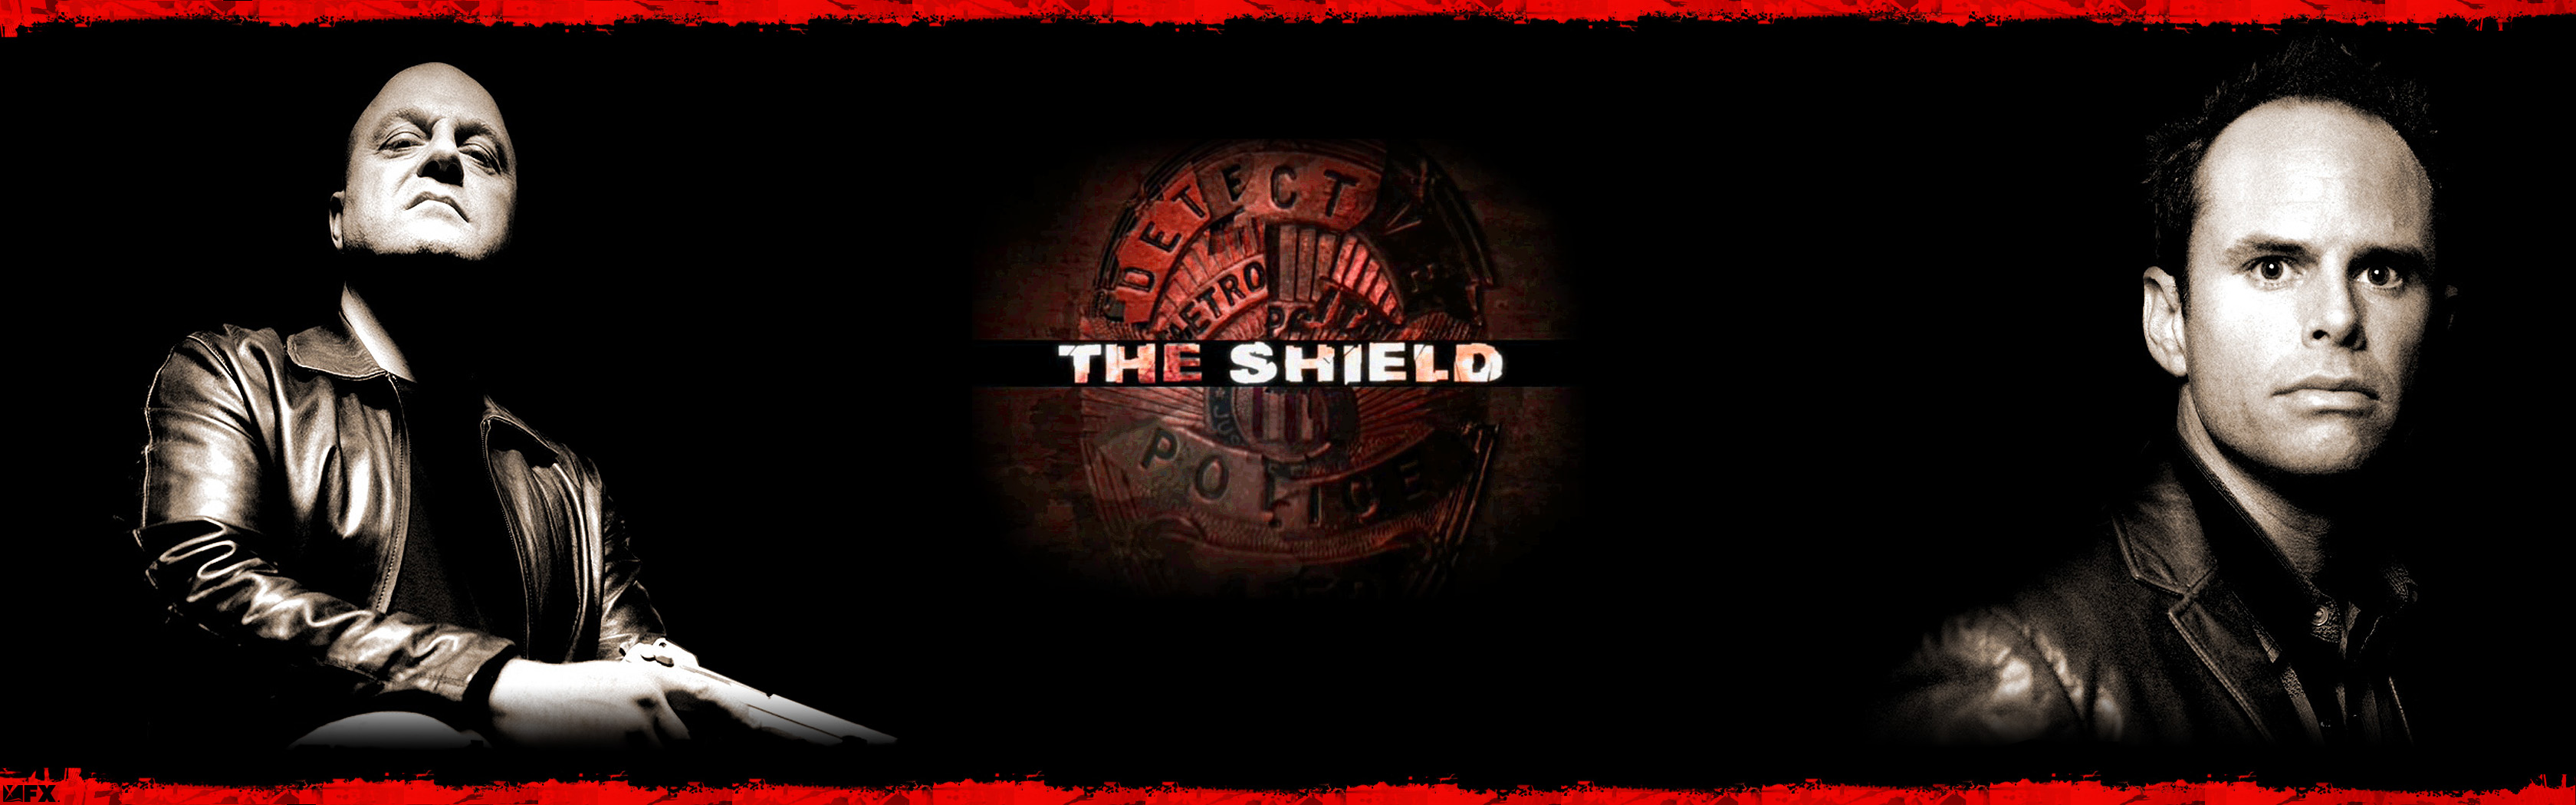 203770 descargar imagen the shield: al margen de la ley, series de televisión: fondos de pantalla y protectores de pantalla gratis